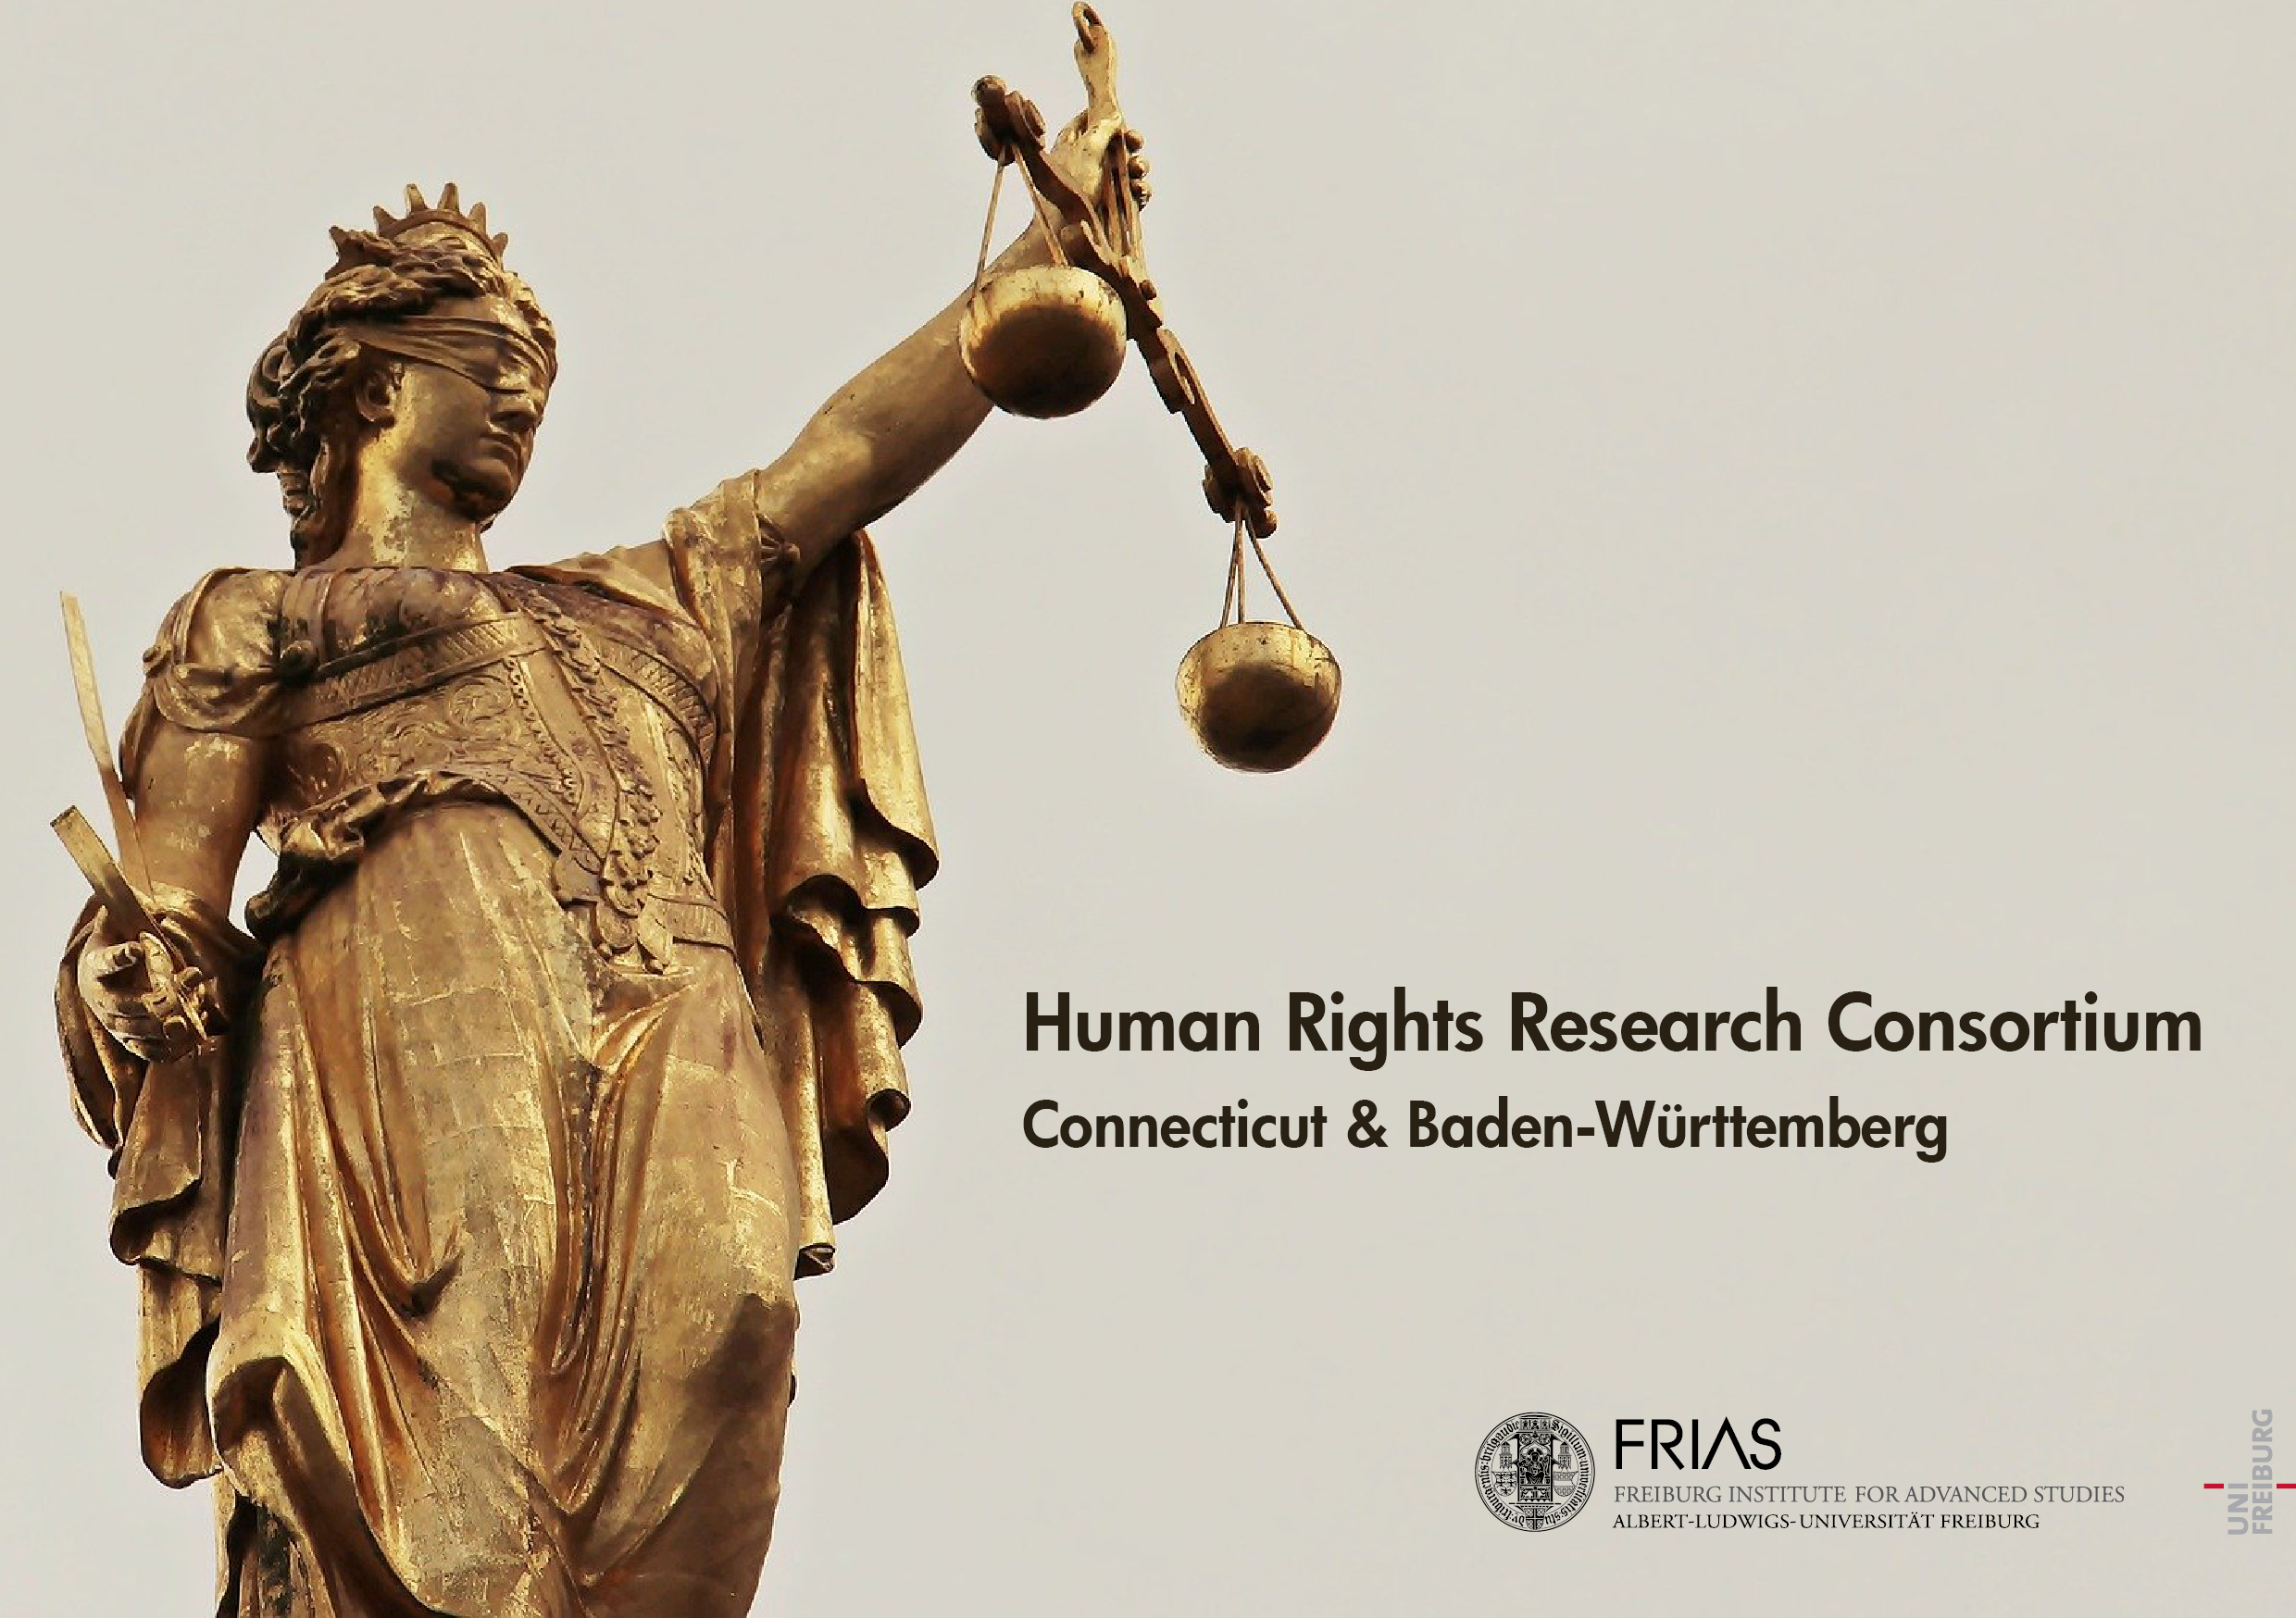 Menschenrechte: ein Forschungsgebiet von wachsender Bedeutung